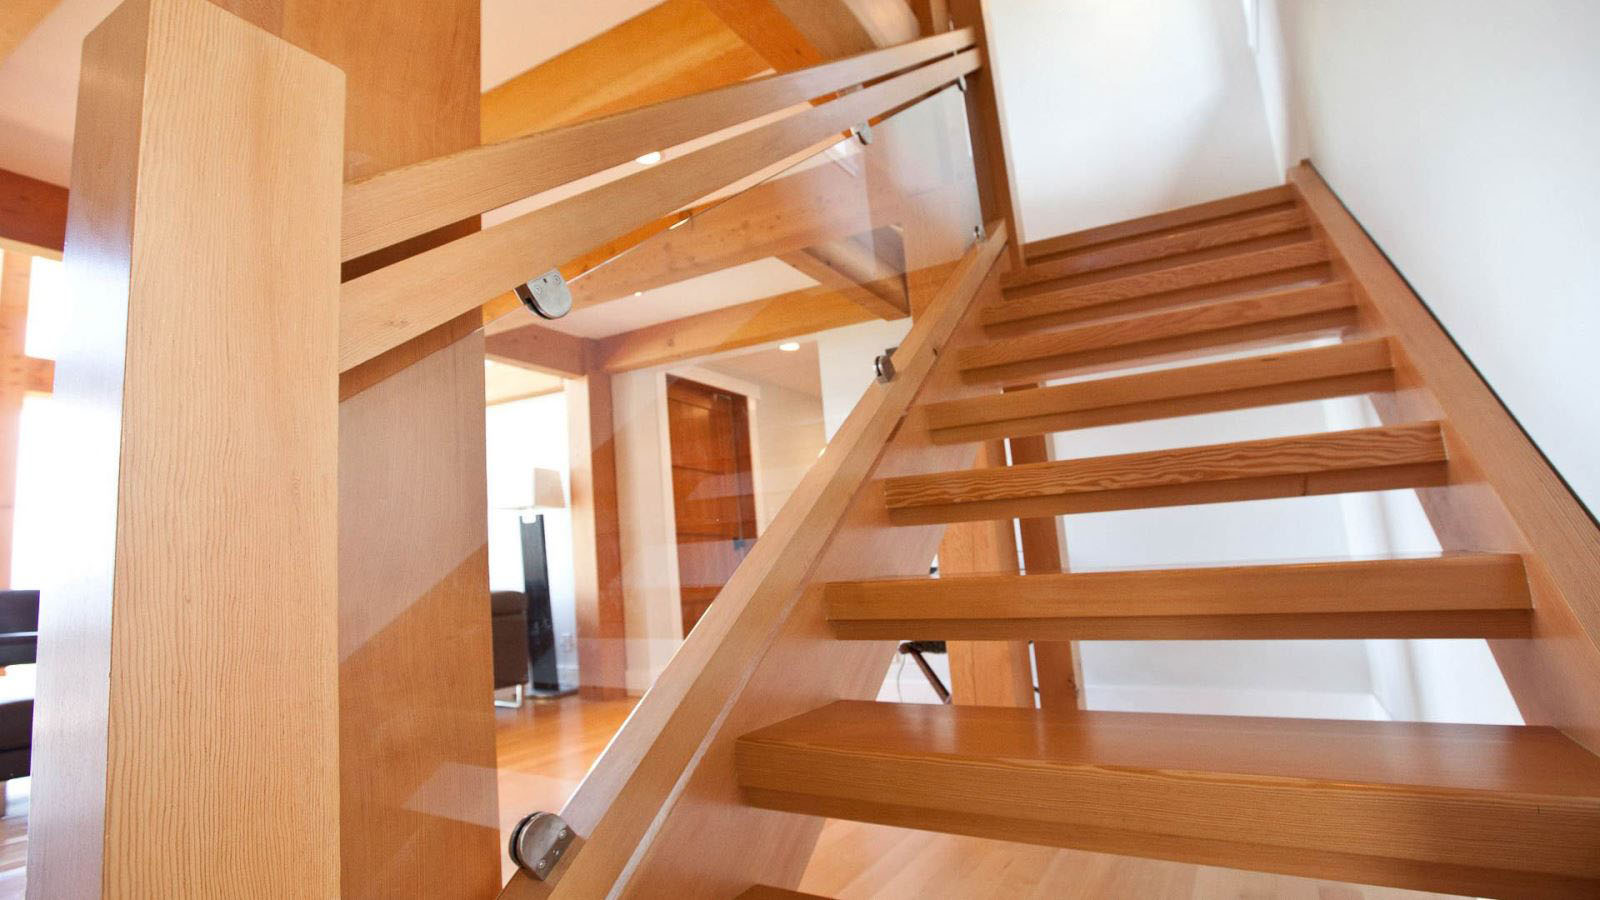 Tổng hợp các mẫu cầu thang gỗ đẹp nhất dành cho ngôi nhà của bạn - [Kích thước hình ảnh: 1600x900 px]